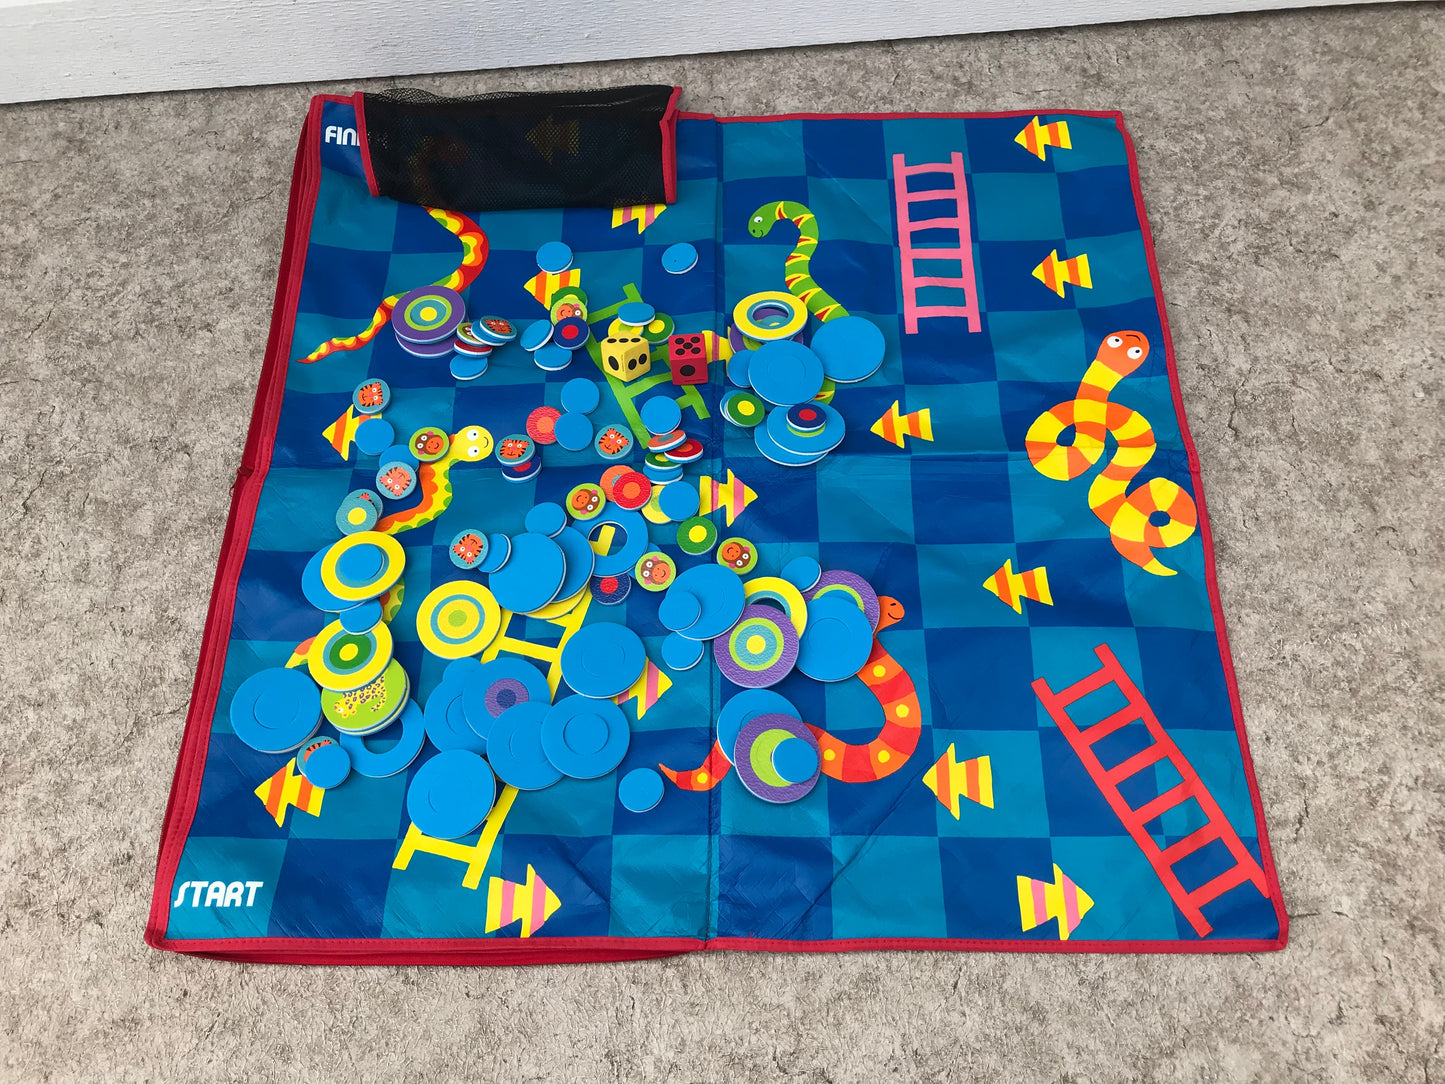 Alex Games Child Play Mat 3 Games in 1 Indoor Outdoor Zip Up Case Age 3+ Excellent